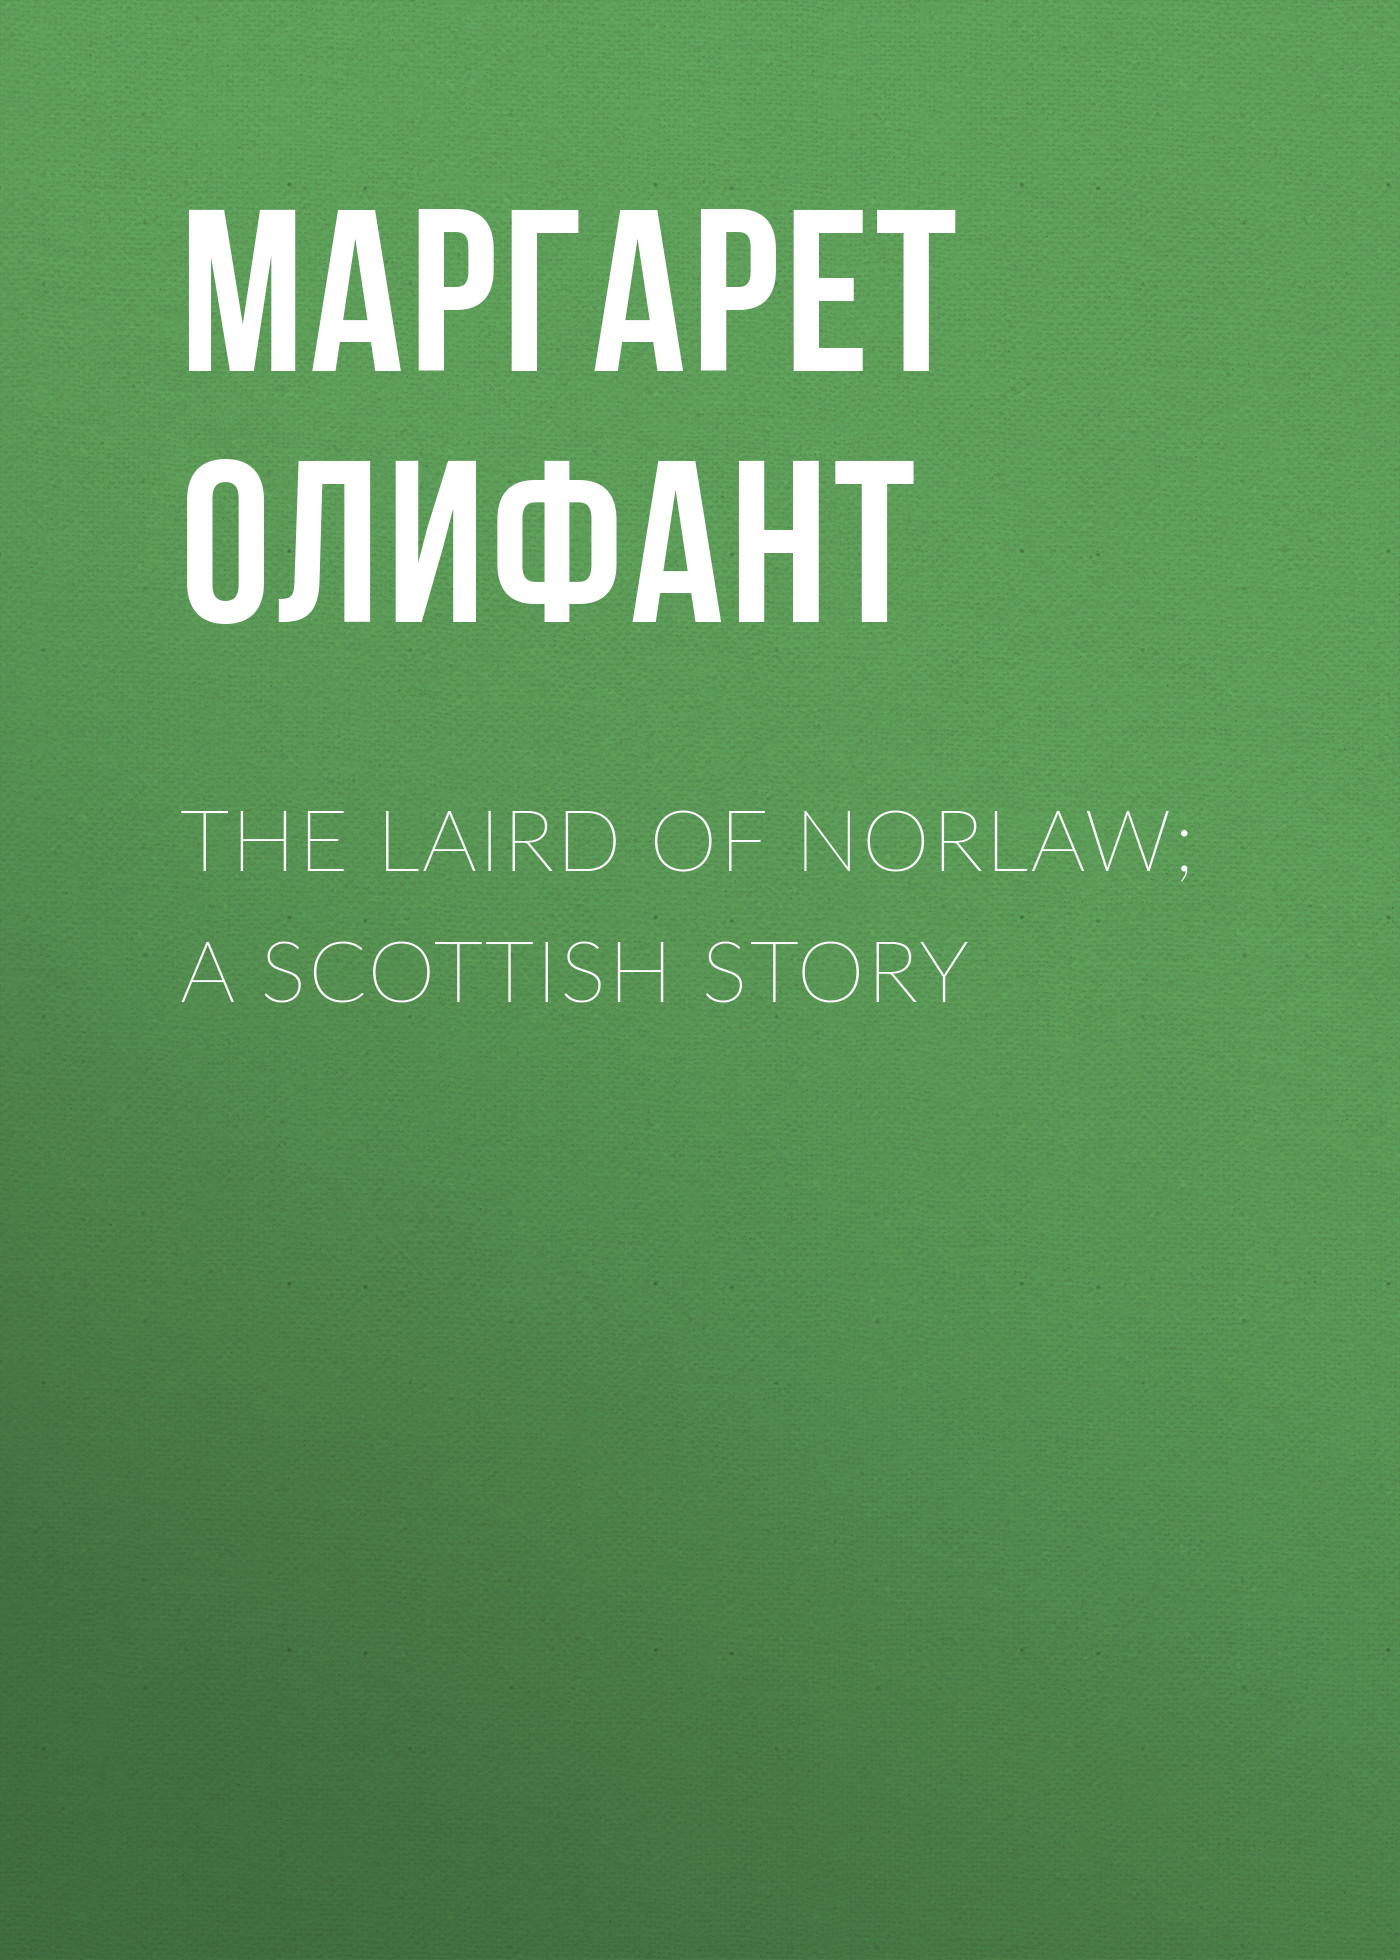 Книга The Laird of Norlaw; A Scottish Story из серии , созданная Маргарет Олифант, может относится к жанру Зарубежная классика, Литература 19 века, Зарубежная старинная литература. Стоимость электронной книги The Laird of Norlaw; A Scottish Story с идентификатором 34839878 составляет 0 руб.